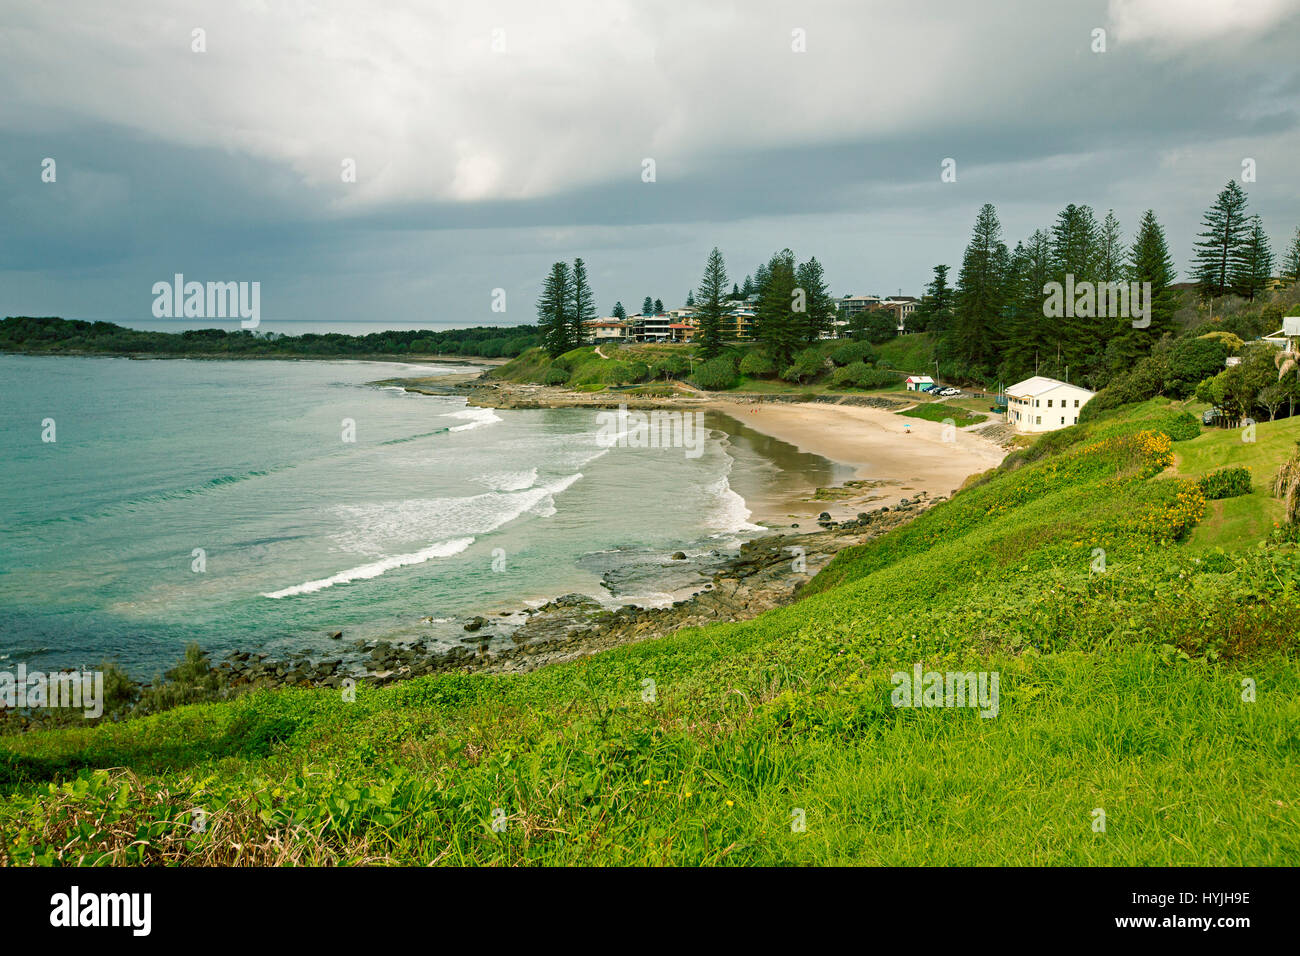 Vue sur plage isolée, la baie, l'océan Pacifique, et le bord de l'eau abrite sous ciel d'orage à Yamba dans le nord du NSW Australie Banque D'Images